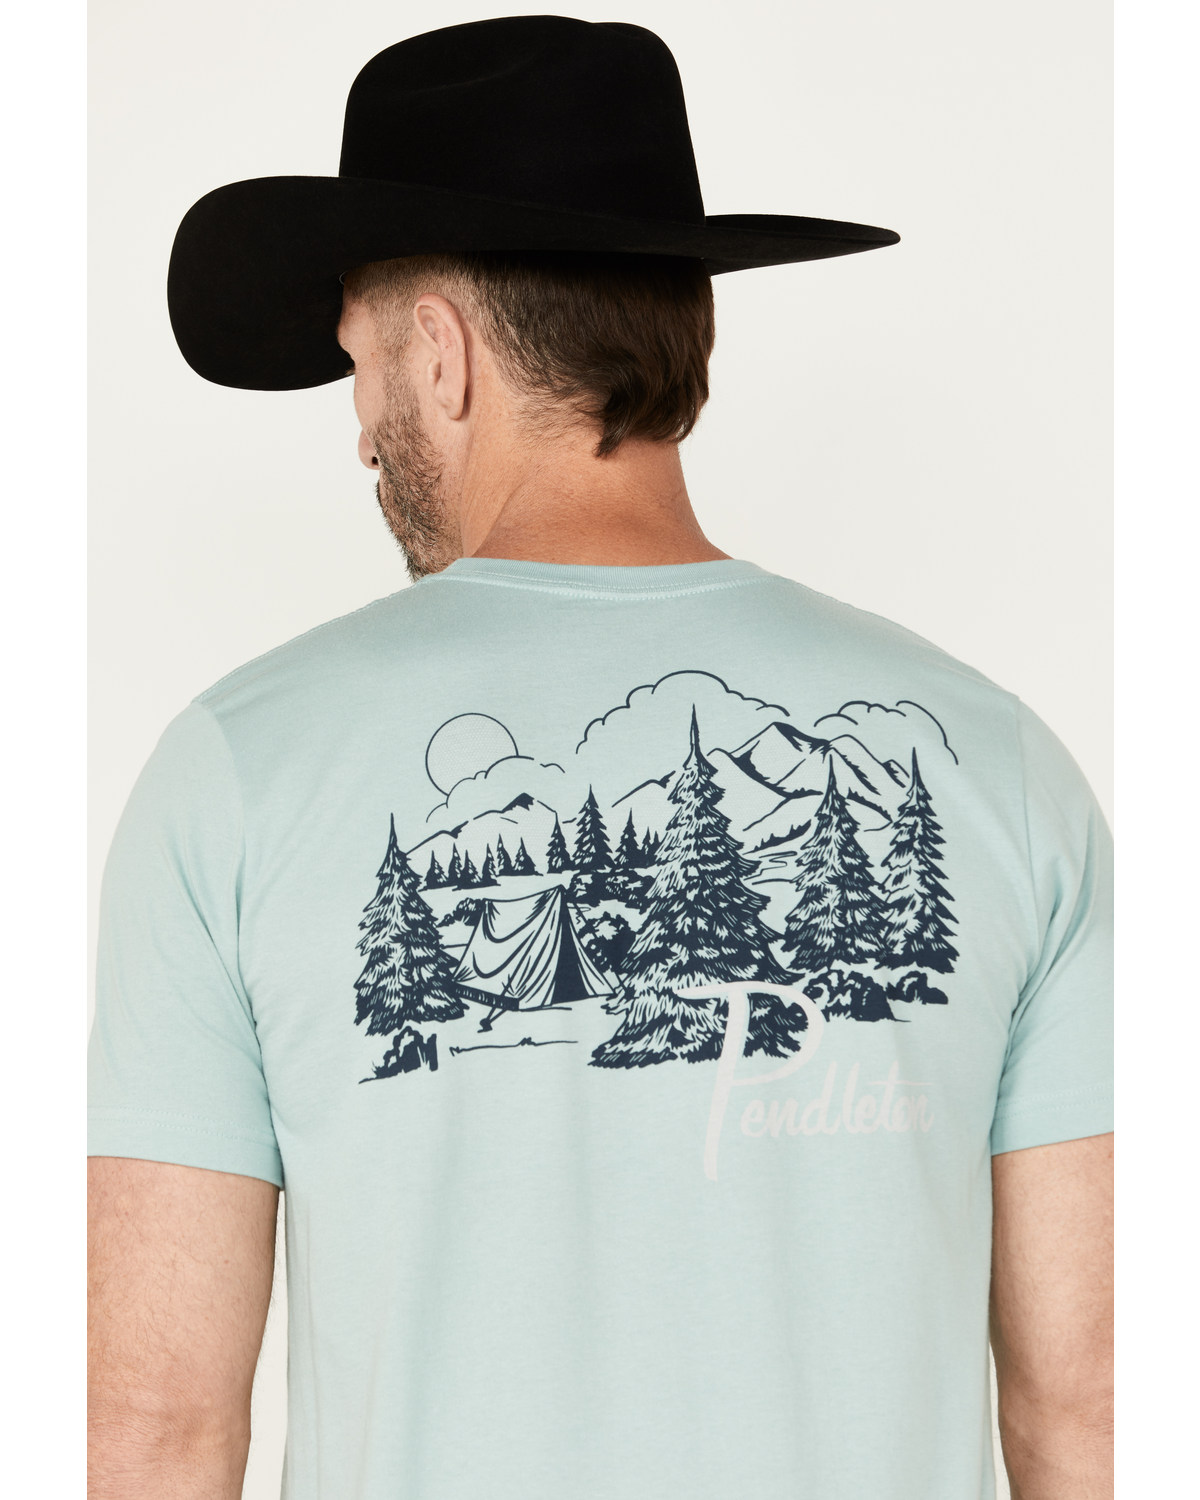 Pendleton Men's Mountain Camping Short Sleeve Graphic T-Shirt